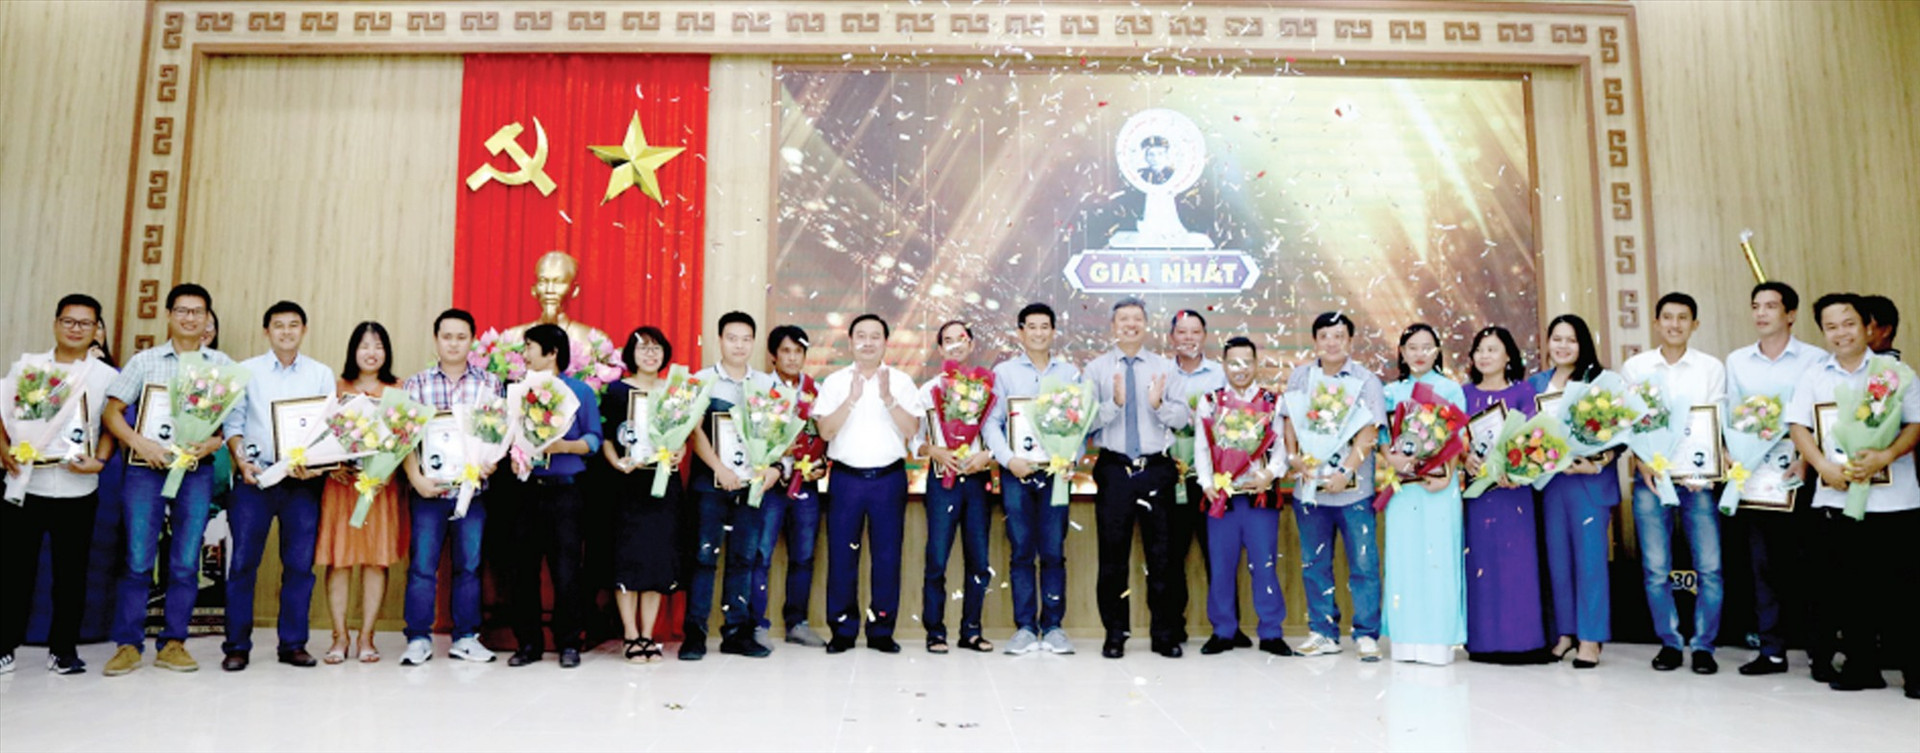 Lãnh đạo tỉnh trao thưởng cho các tác giả đoạt giải Nhất giải Báo chí Huỳnh Thúc Kháng lần thứ XVI (2021 - 2022). Ảnh: PHƯƠNG THẢO